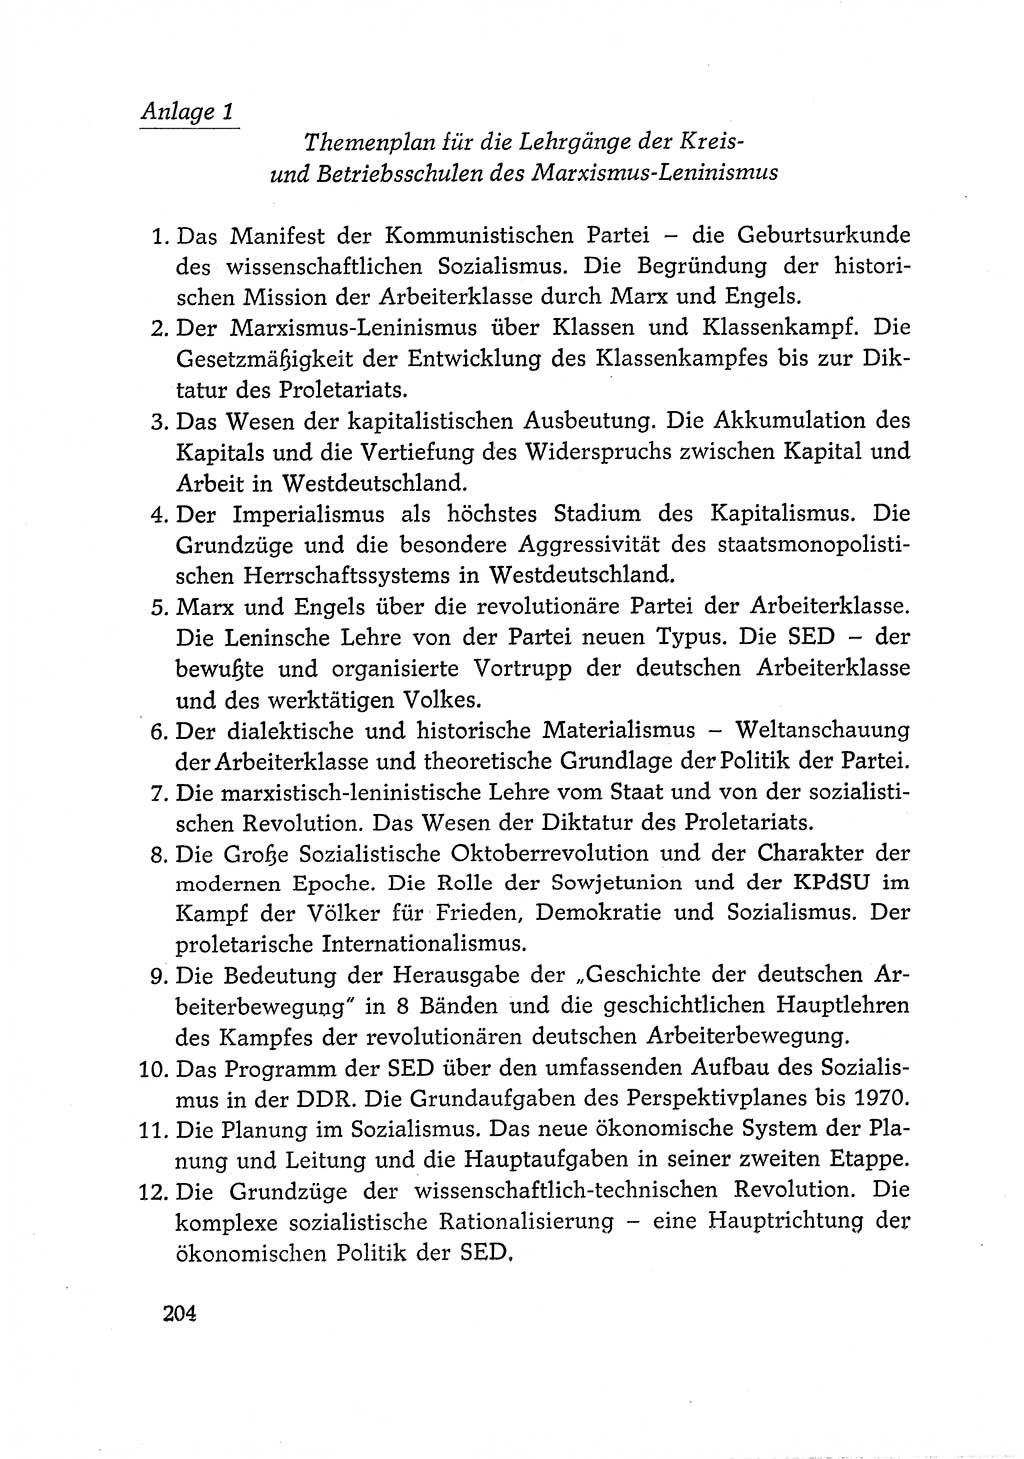 Dokumente der Sozialistischen Einheitspartei Deutschlands (SED) [Deutsche Demokratische Republik (DDR)] 1966-1967, Seite 204 (Dok. SED DDR 1966-1967, S. 204)